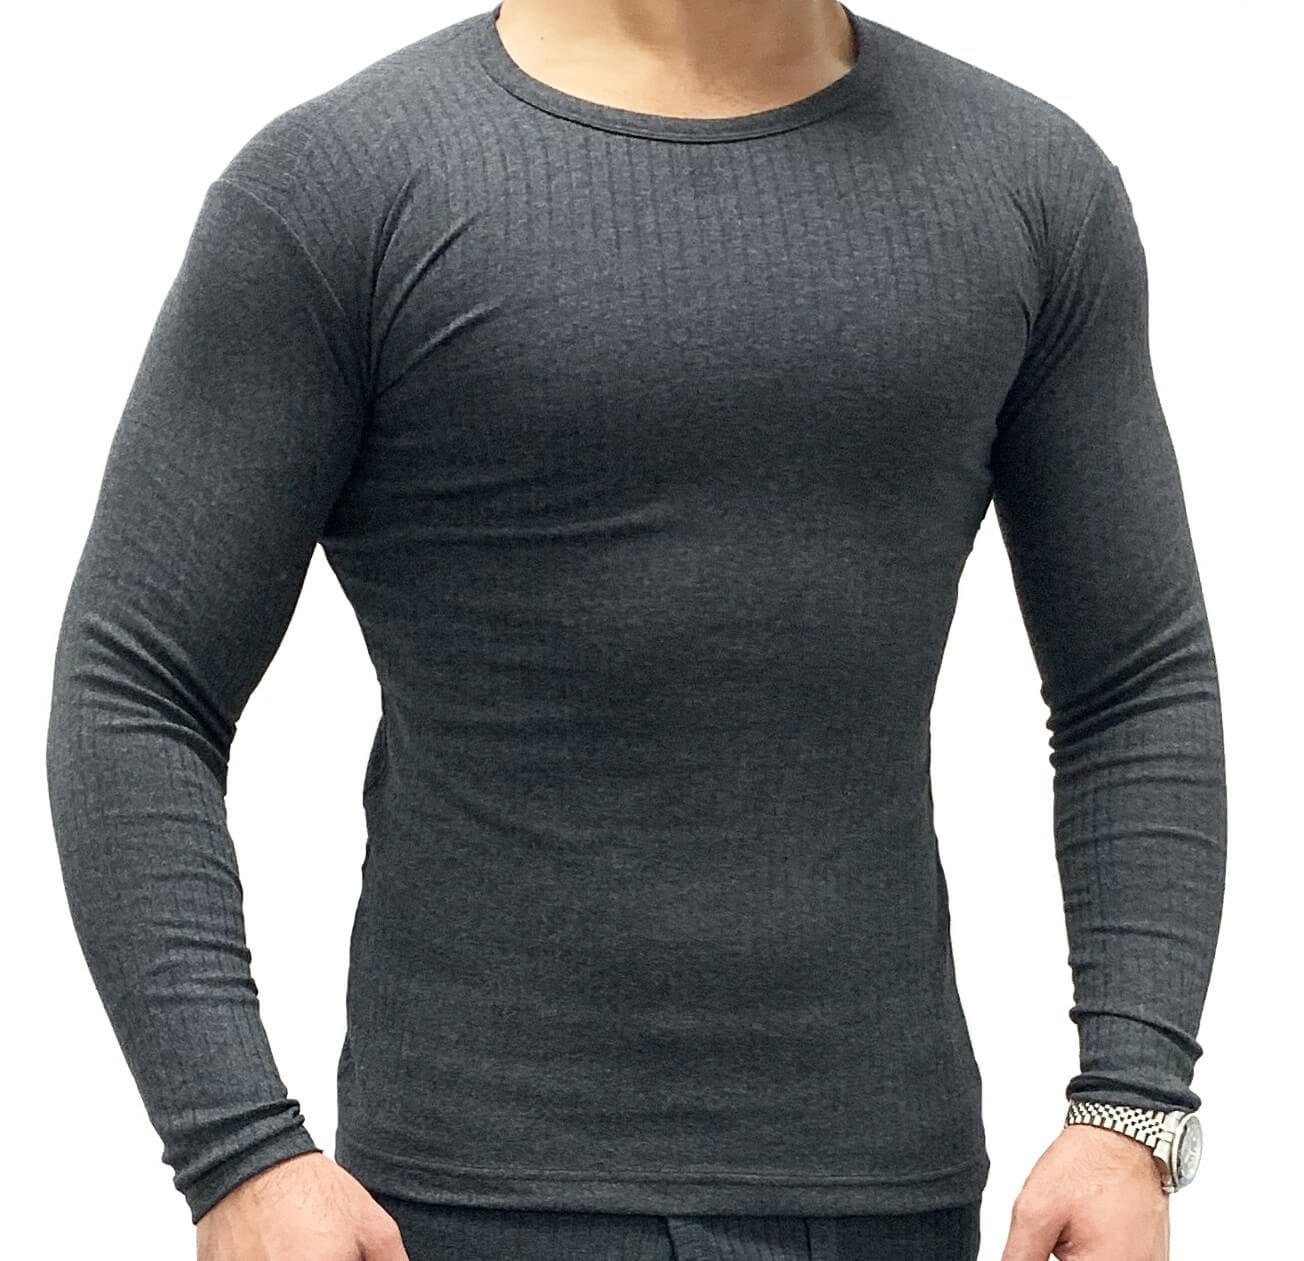 Garcia Pescara Thermounterhemd warmes langärmliges Thermo-Shirt für Herren weich, elastisch anthrazit